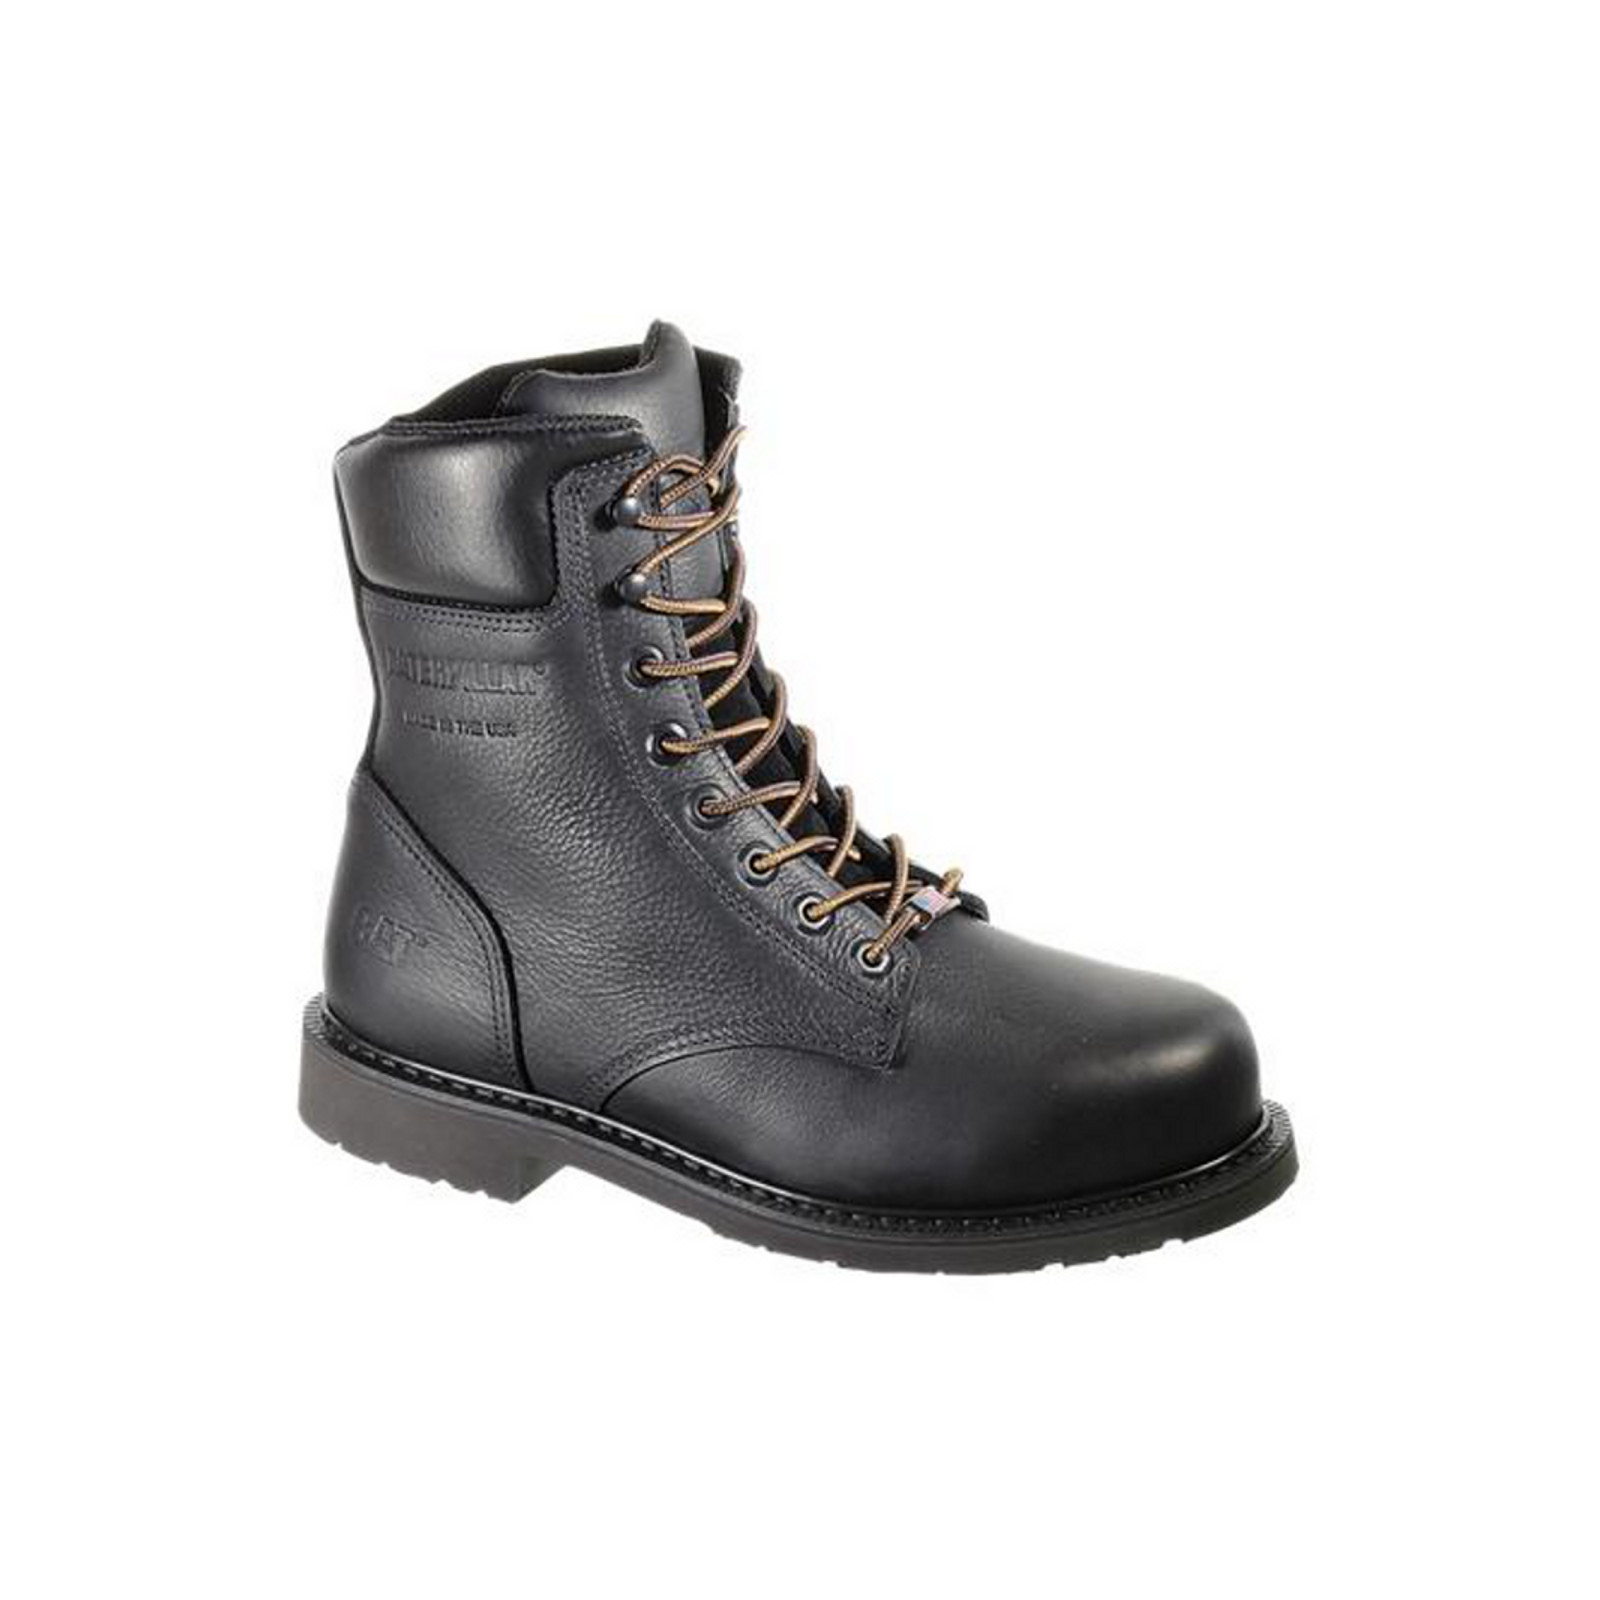 Cat Footwear Men's 8" Black Leather Steel-Toe Work Boot